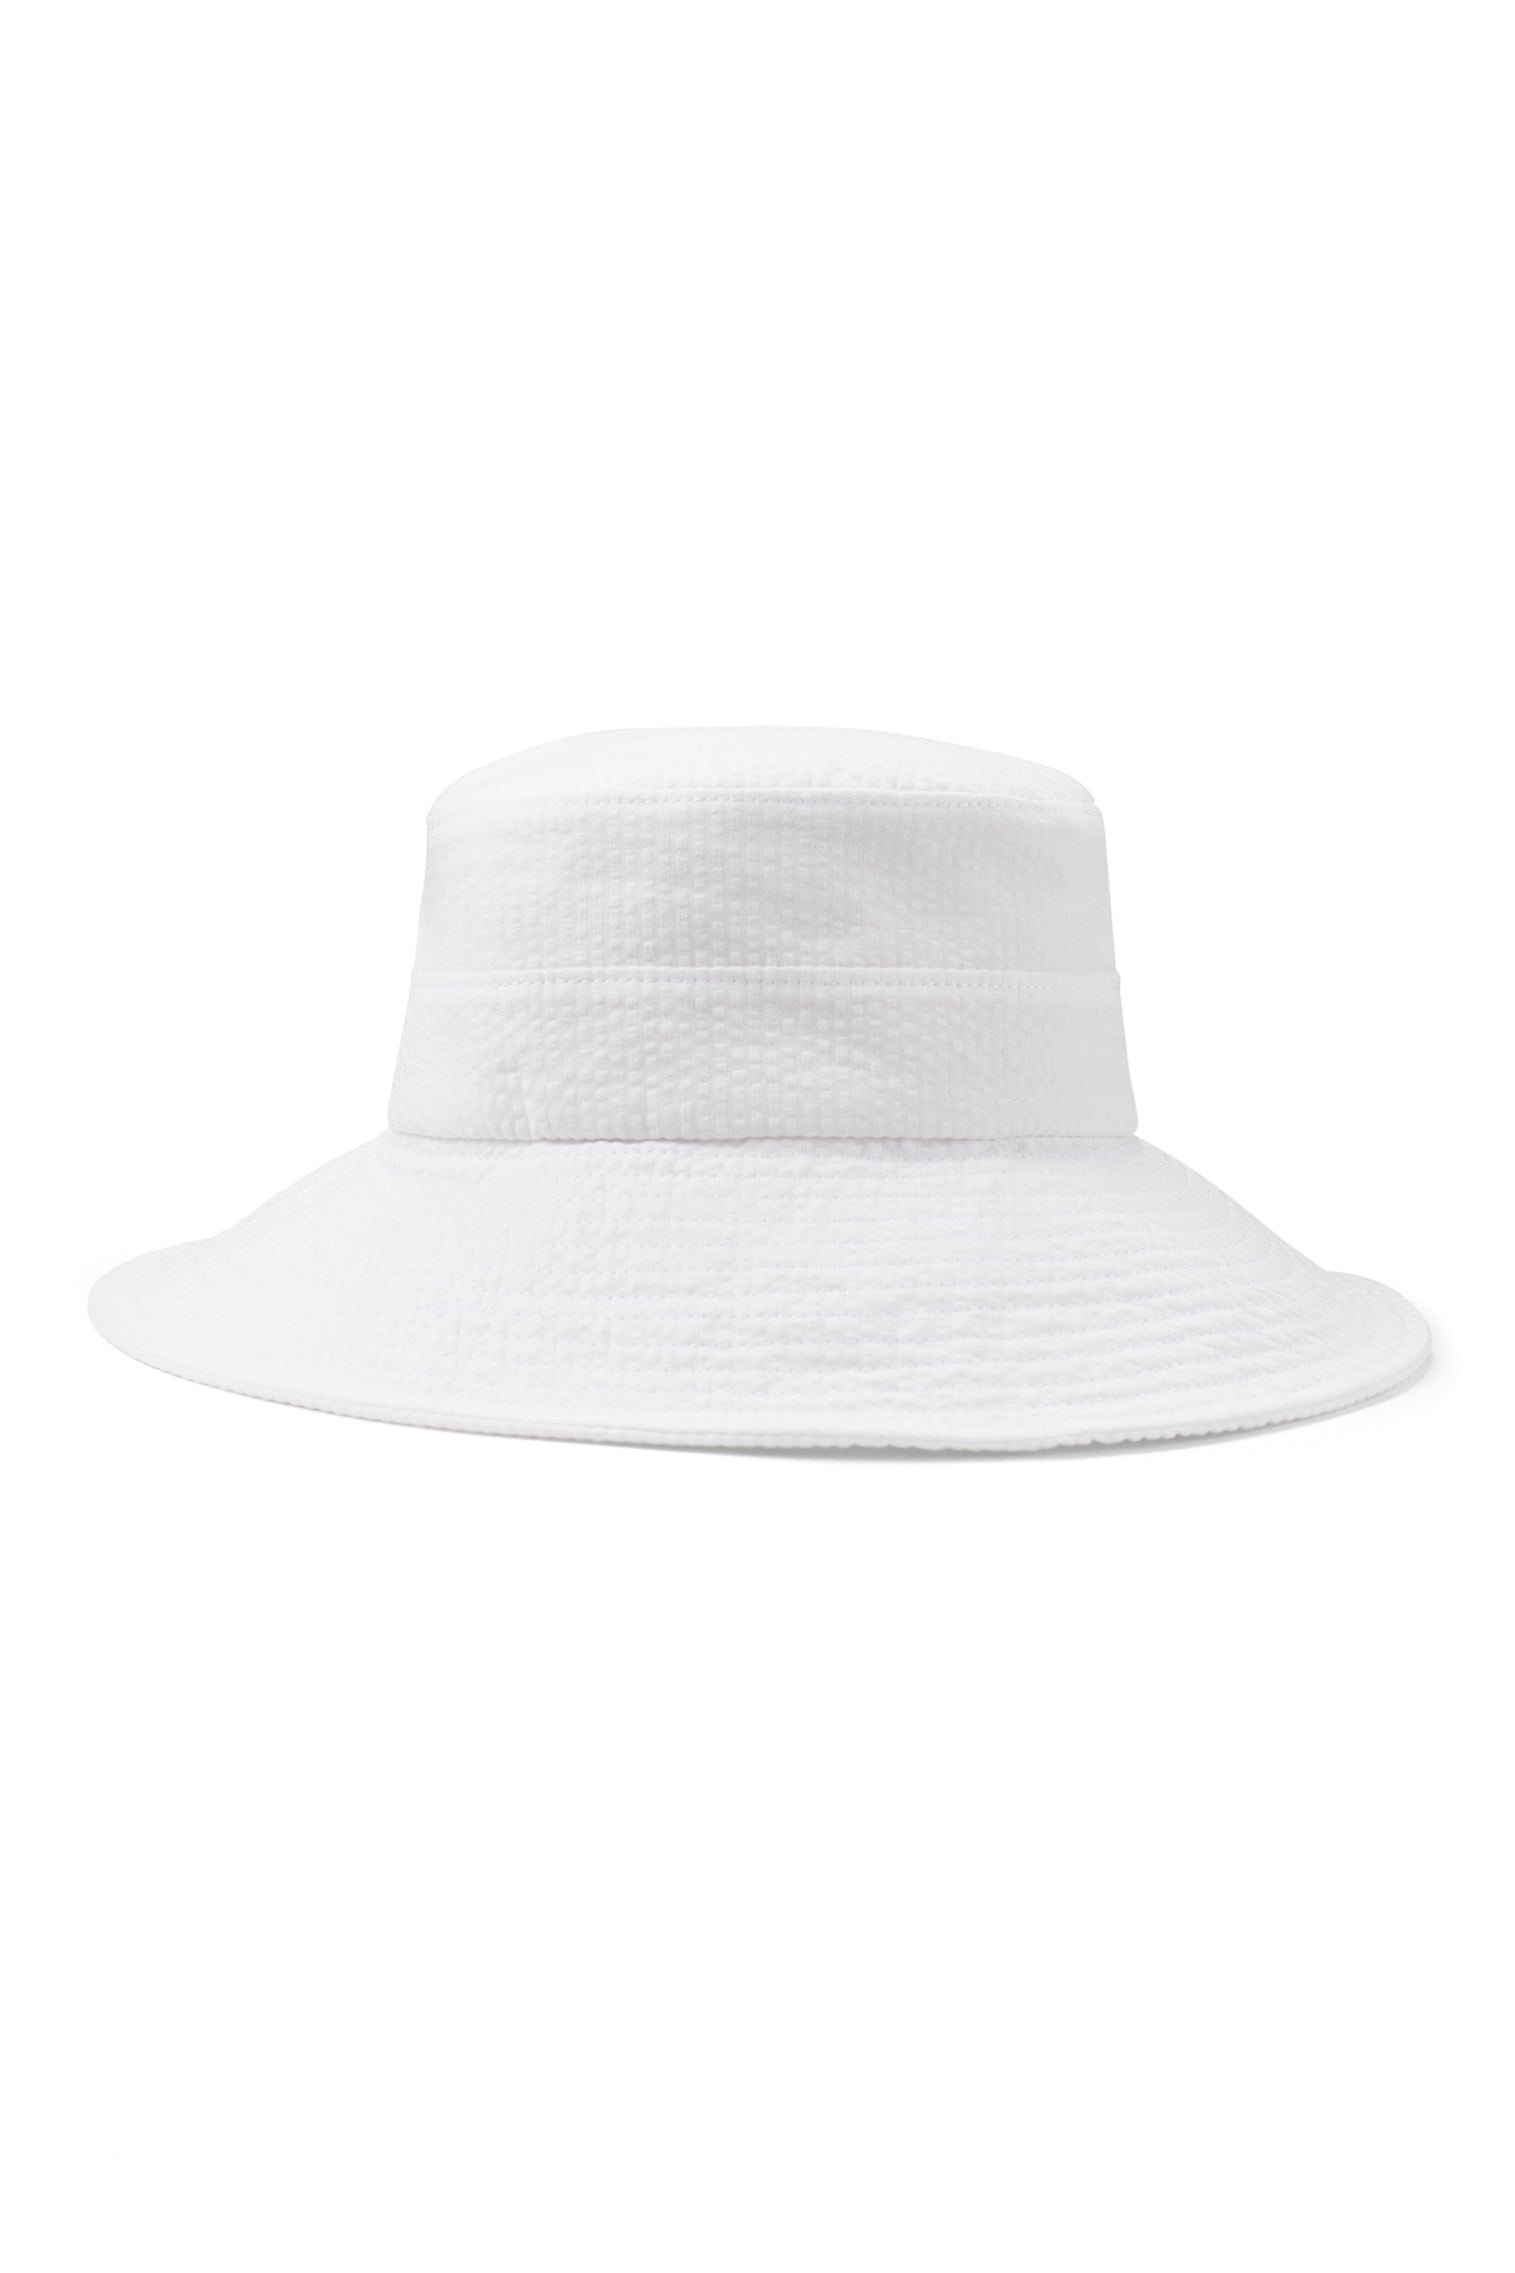 Margot Seersucker Sun Hat -  - Lock & Co. Hatters London UK